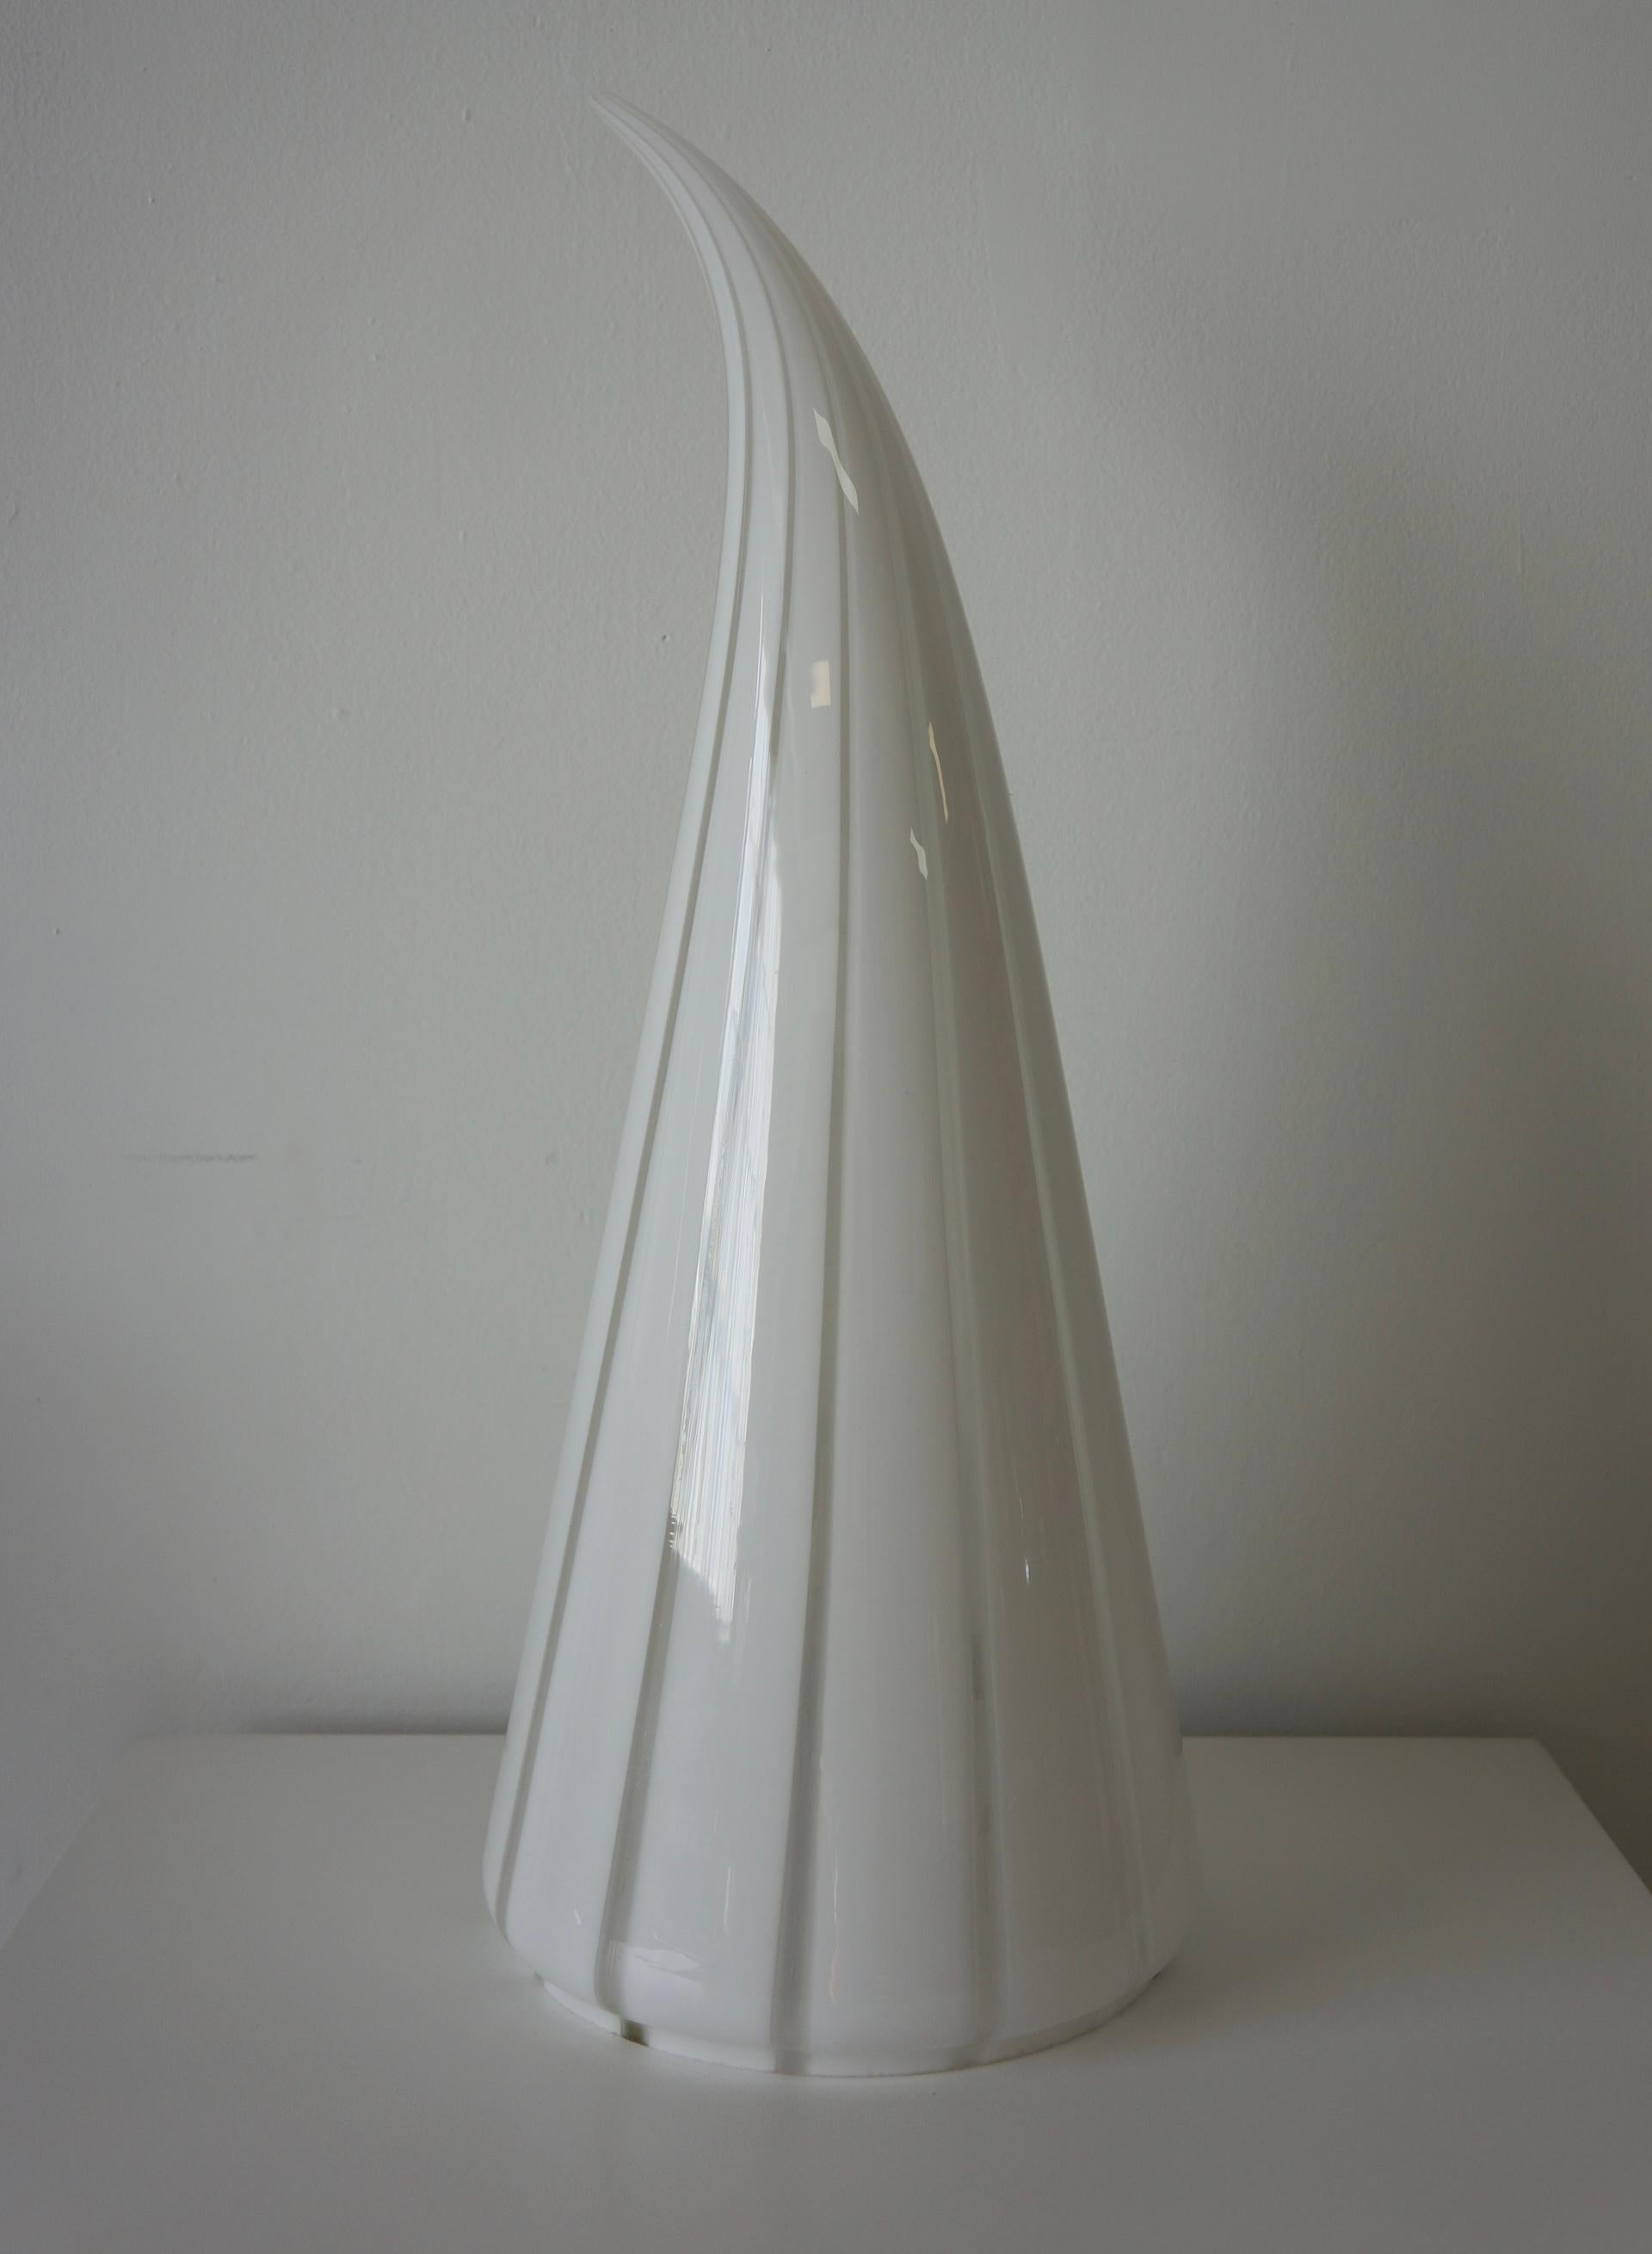 Spectaculaire lampe de forme conique en verre de Murano qui s'arrondit au sommet. Dans le style de Venini et fabriqué dans les années 1970 à Murano. Il est rayé de verre d'art clair et blanc laiteux. C'est une belle lampe qui diffuse une lumière